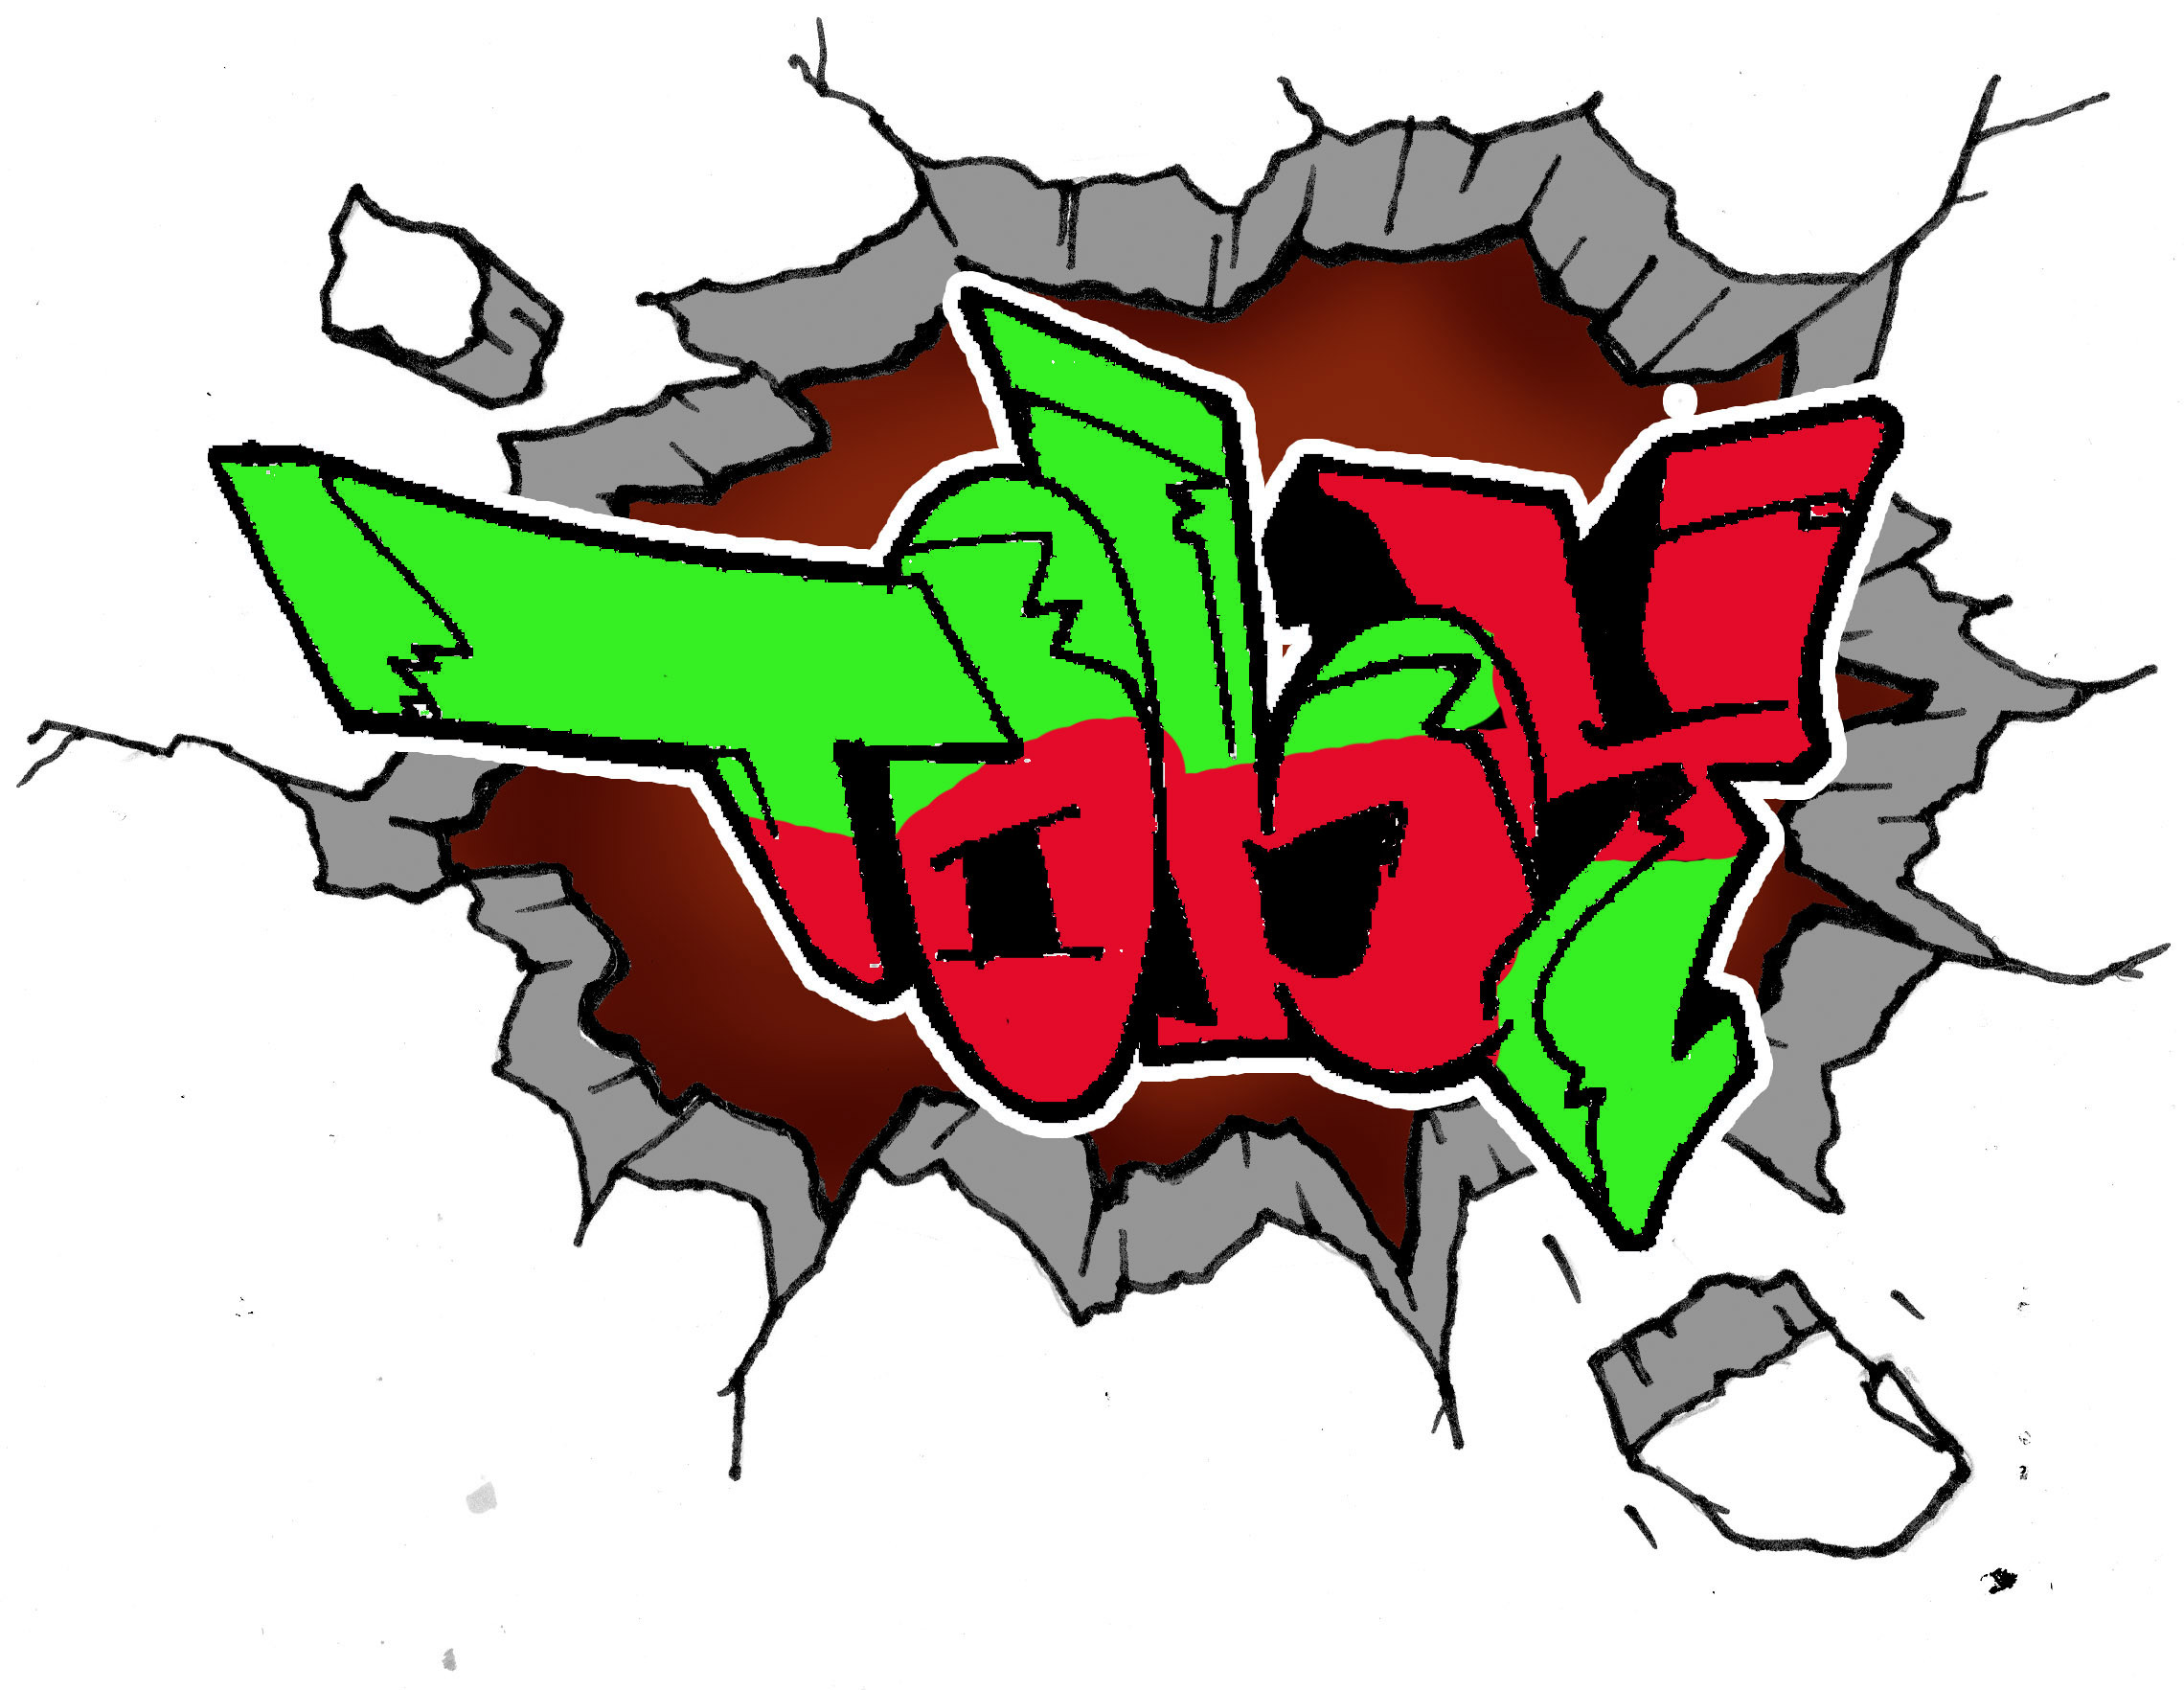 2280x1764 Cool Graffiti Backgrounds To Draw 9 Graffiti Background Designs Images –  Cool Graffiti Designs